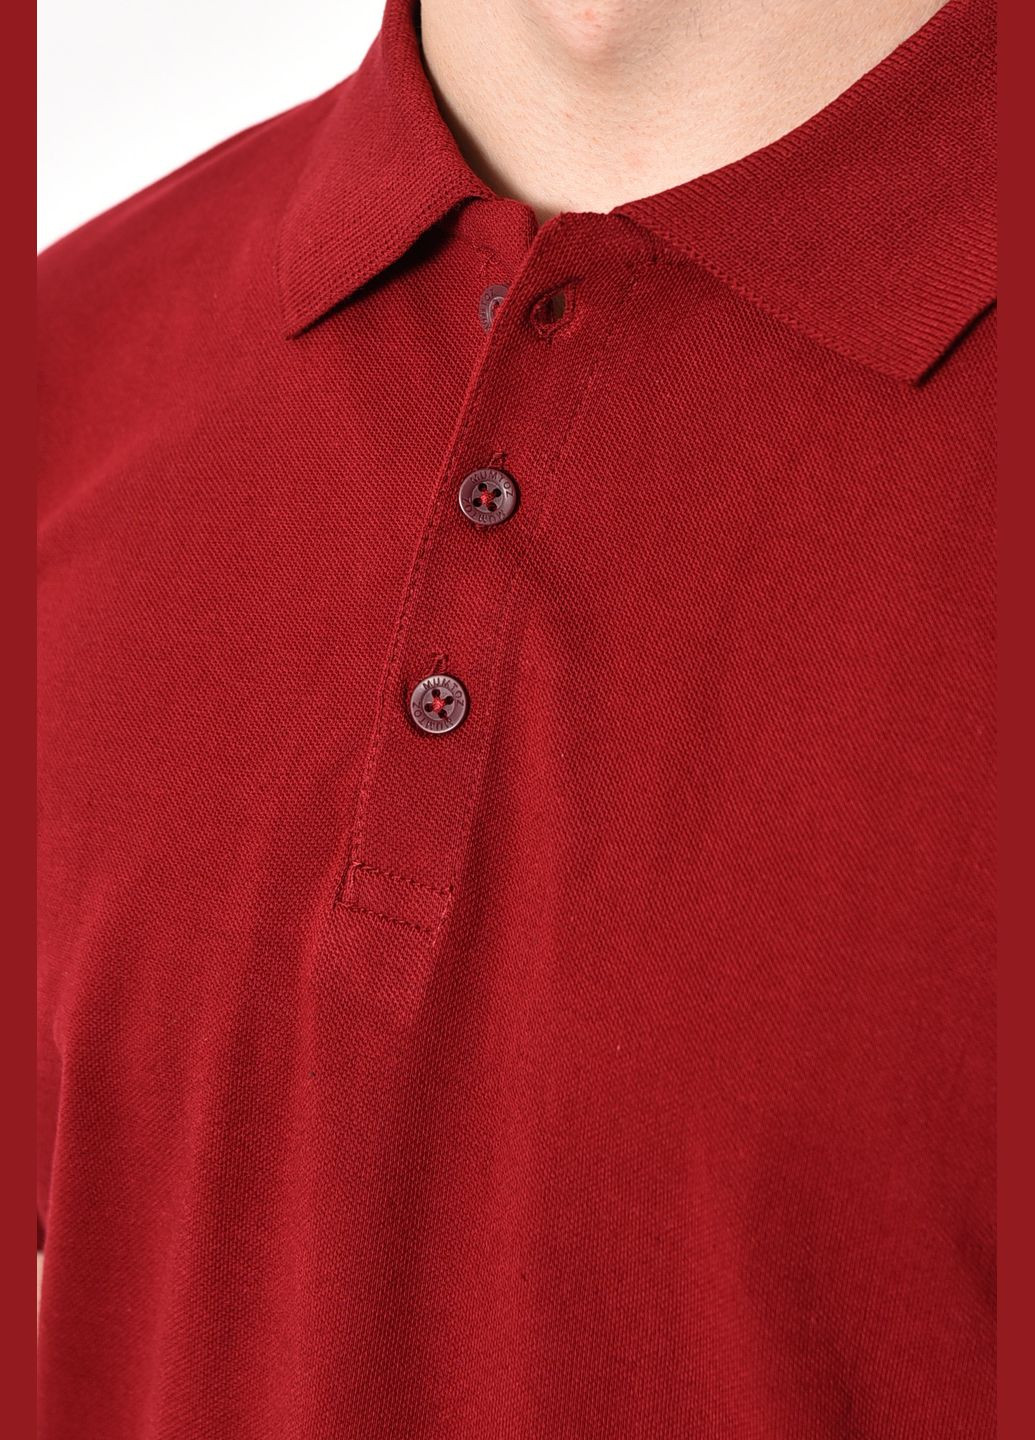 Бордовая футболка поло мужская бордового цвета Let's Shop